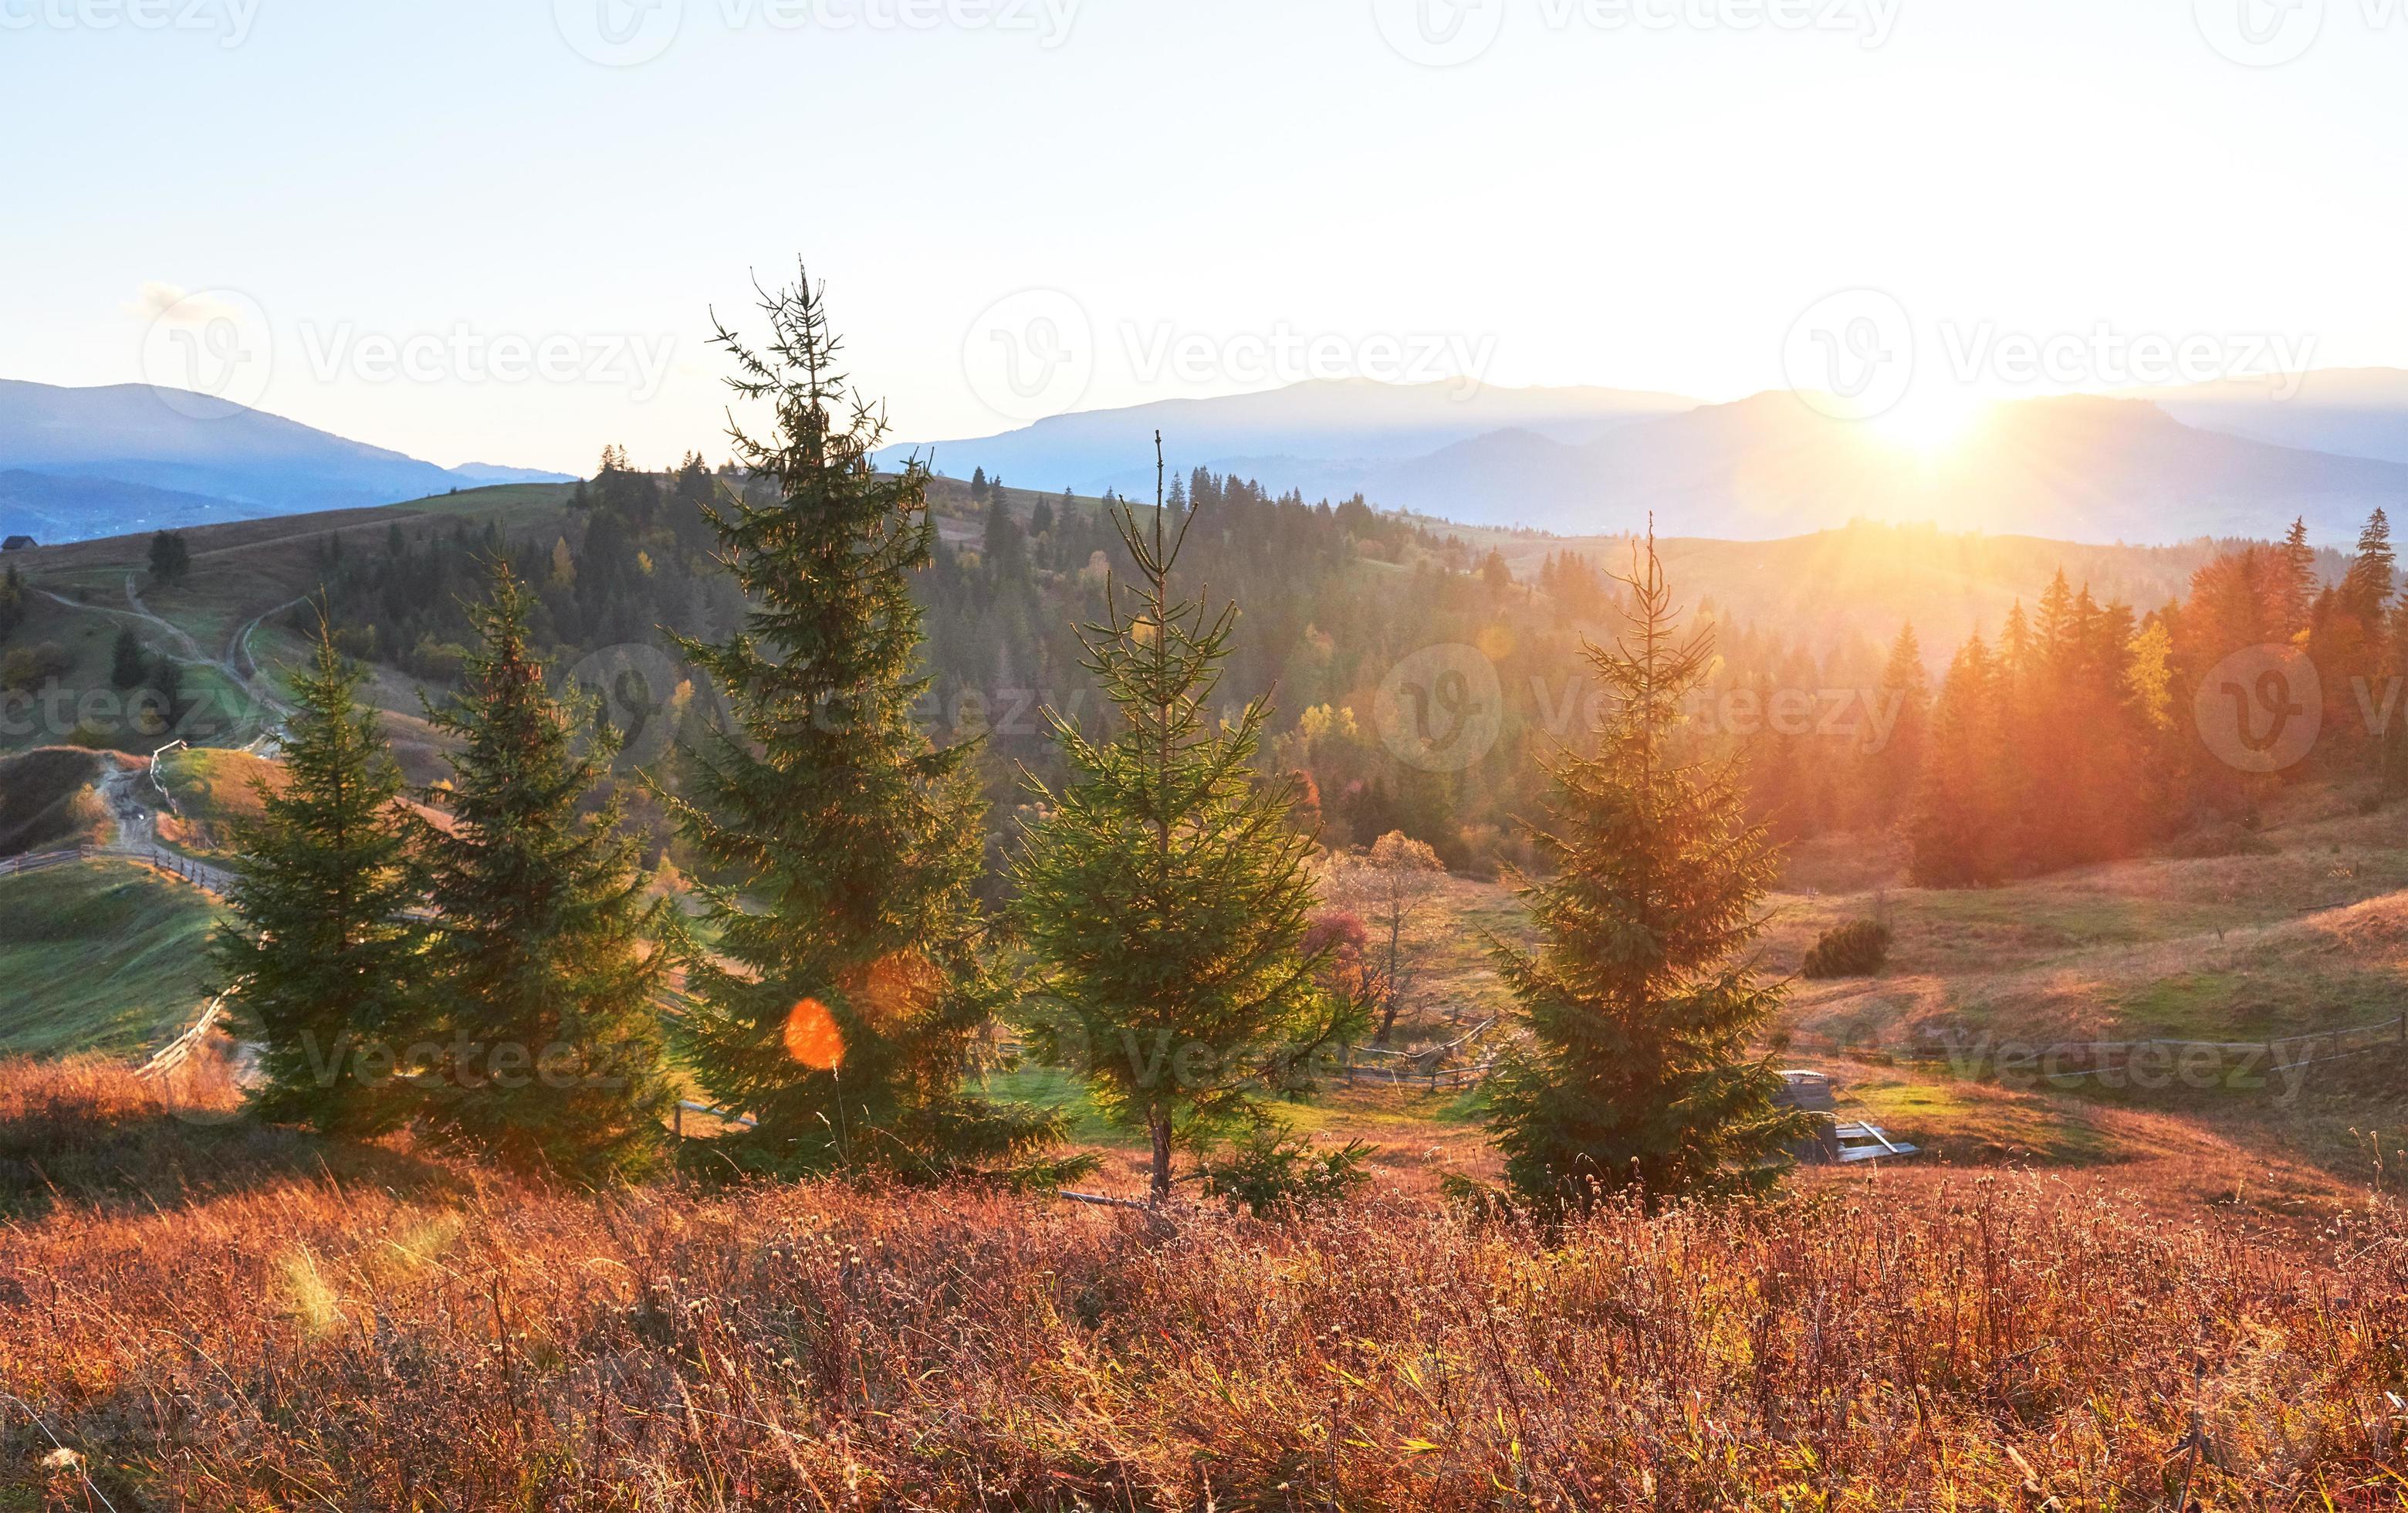 incredibile paesaggio mattutino autunnale in montagna con prati e alberi colorati in primo piano e nebbia sotto i piedi. parco naturale nazionale synevyr, montagne dei Carpazi, ucraina. bellissimo sfondo autunnale foto